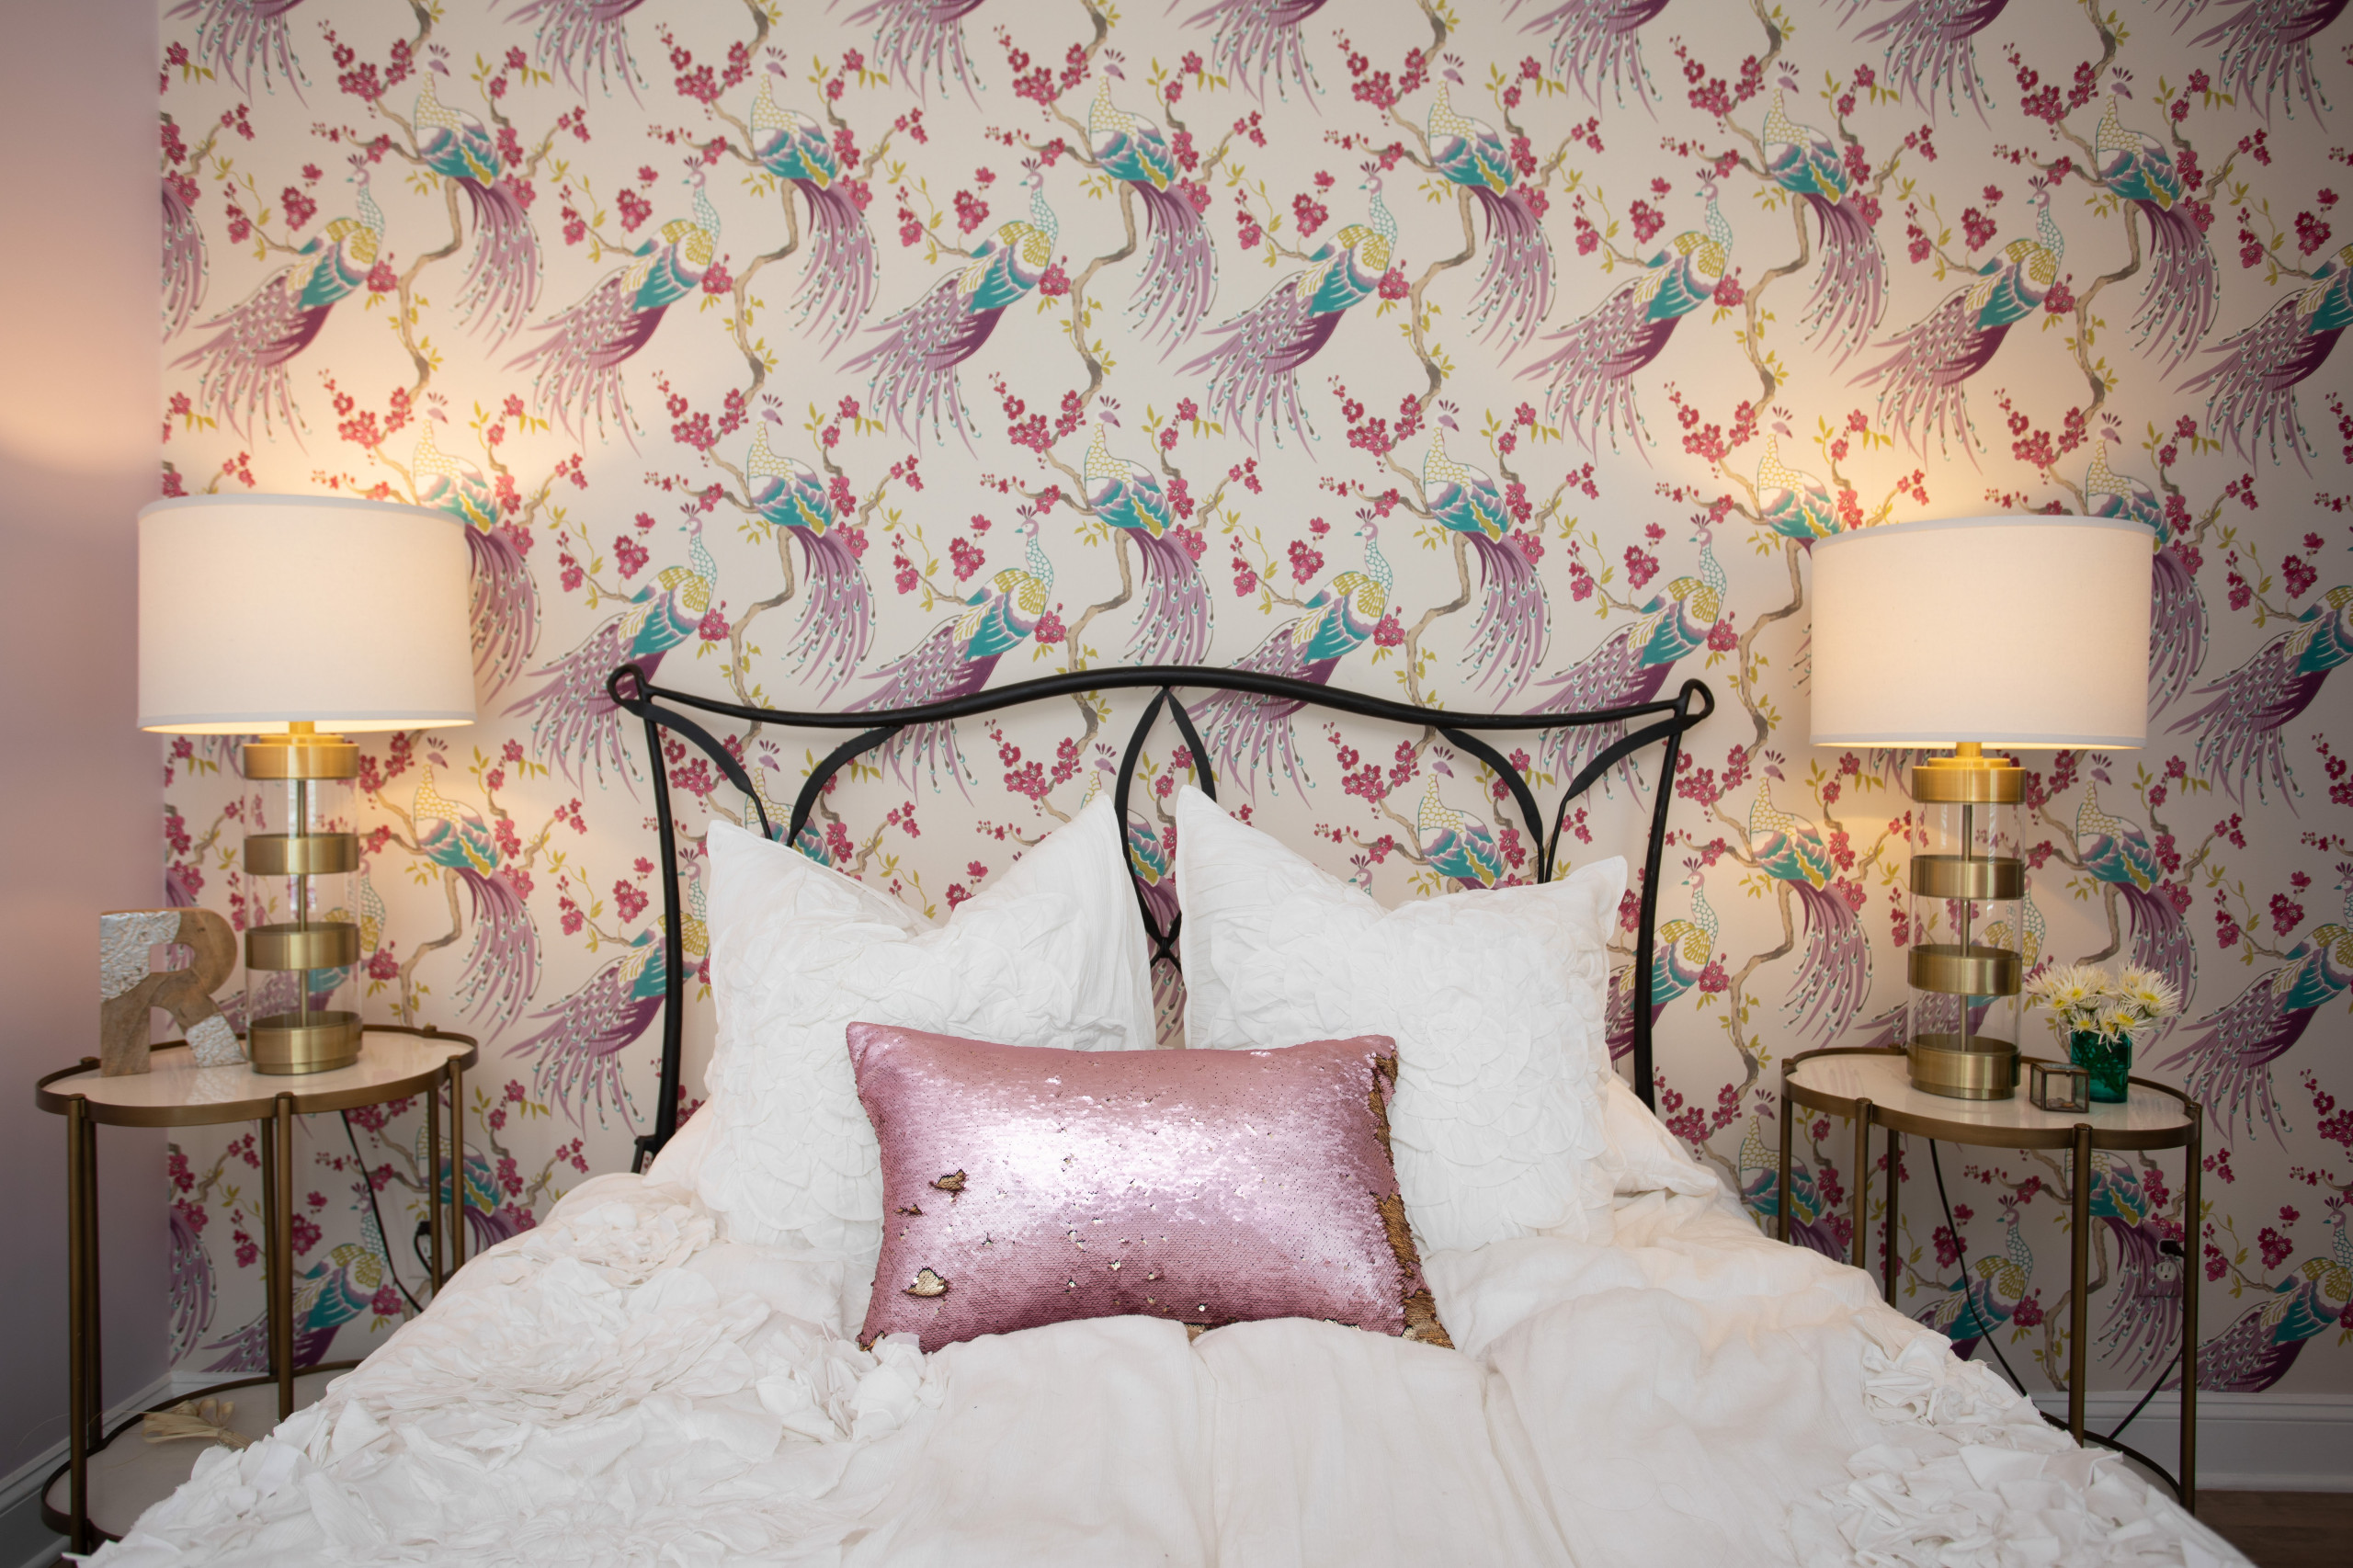 おしゃれな寝室 紫の壁 壁紙 のインテリア画像 75選 22年2月 Houzz ハウズ